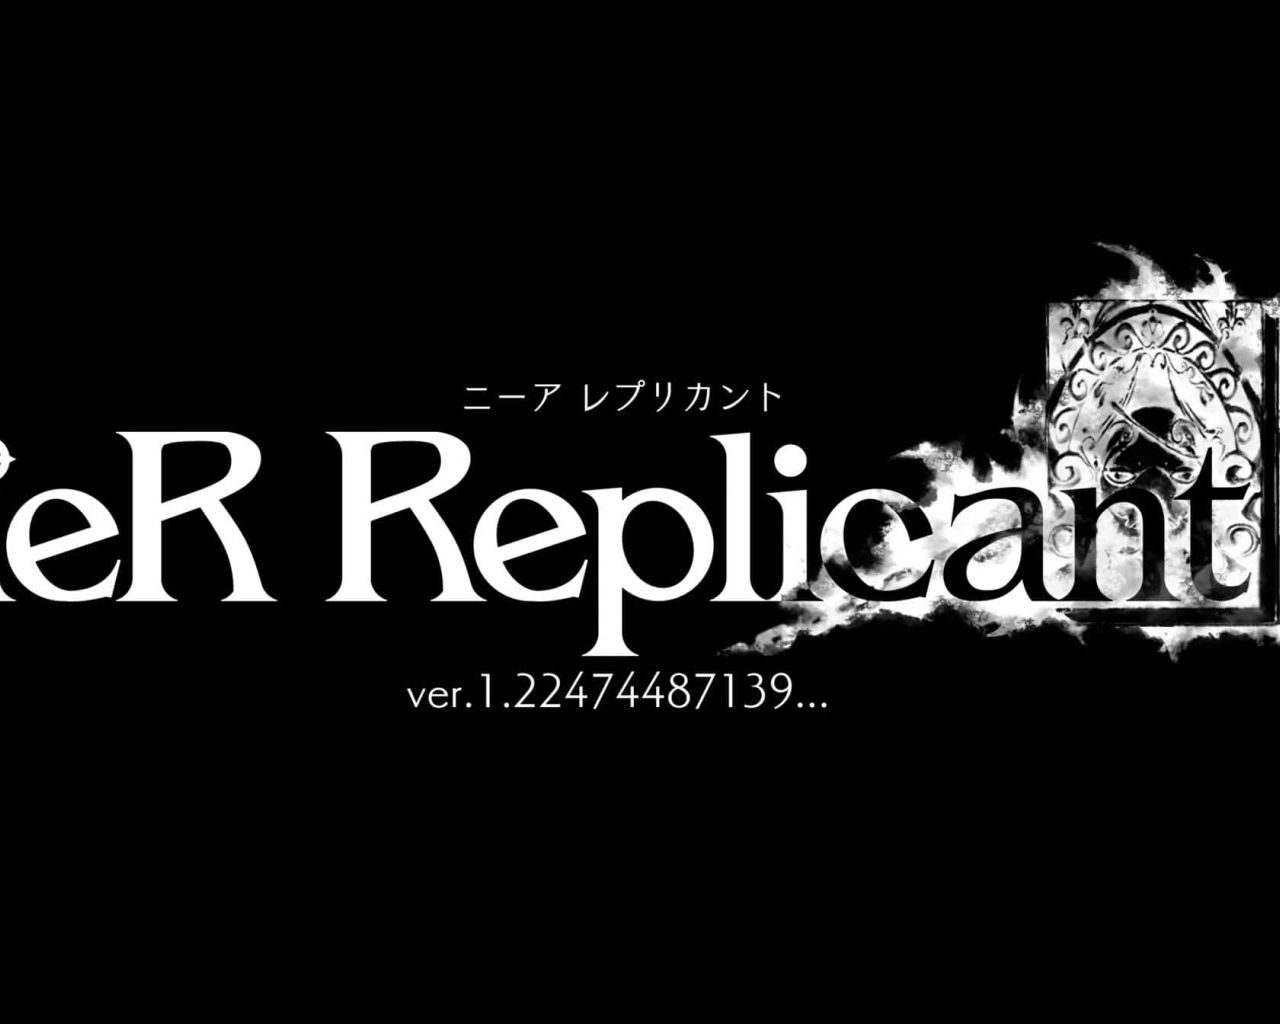 Логотип новой ролевой игры NieR Replicant ver.1.22474487139 на черном фоне